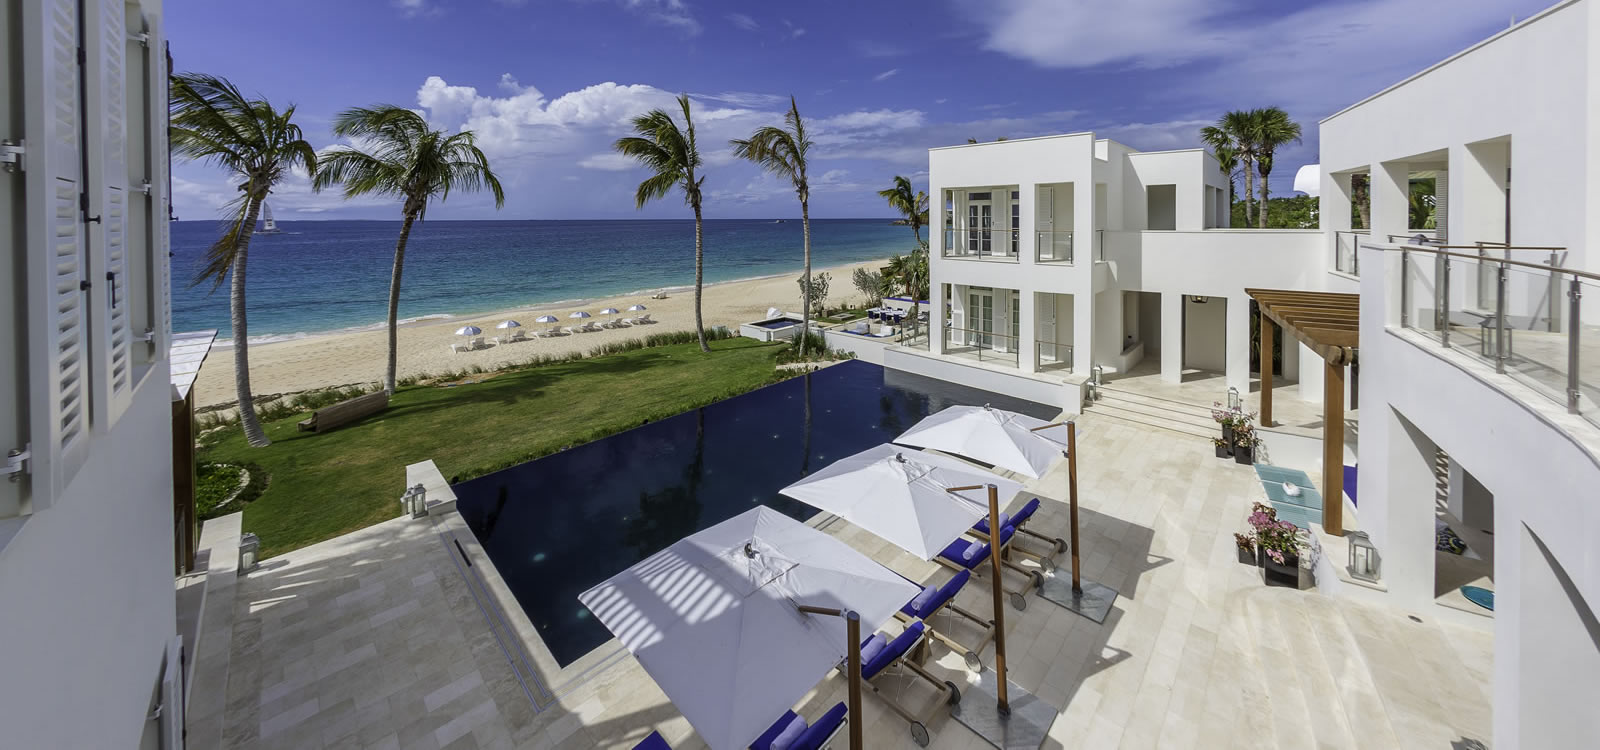 9 Bedroom Ultra-Luxury Beachfront Villa for Sale, Barnes Bay, Anguilla ...